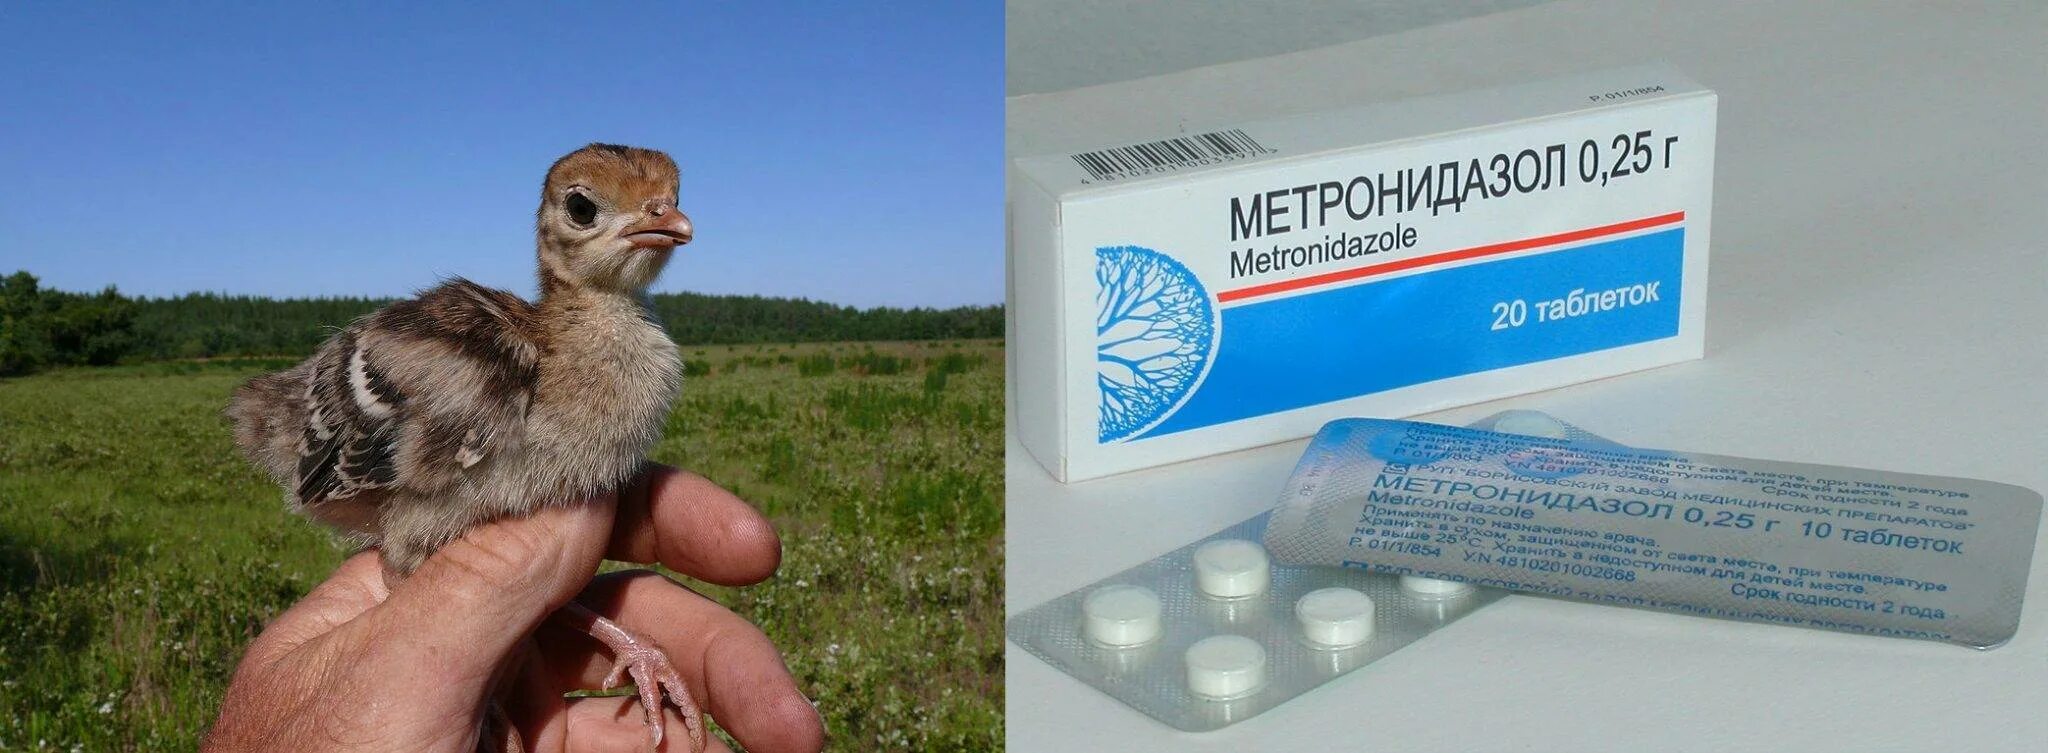 Метронидазол курам дозировка. Лекарство для индюков. Лекарство с цыпленком. Препараты для маленьких индюшат.